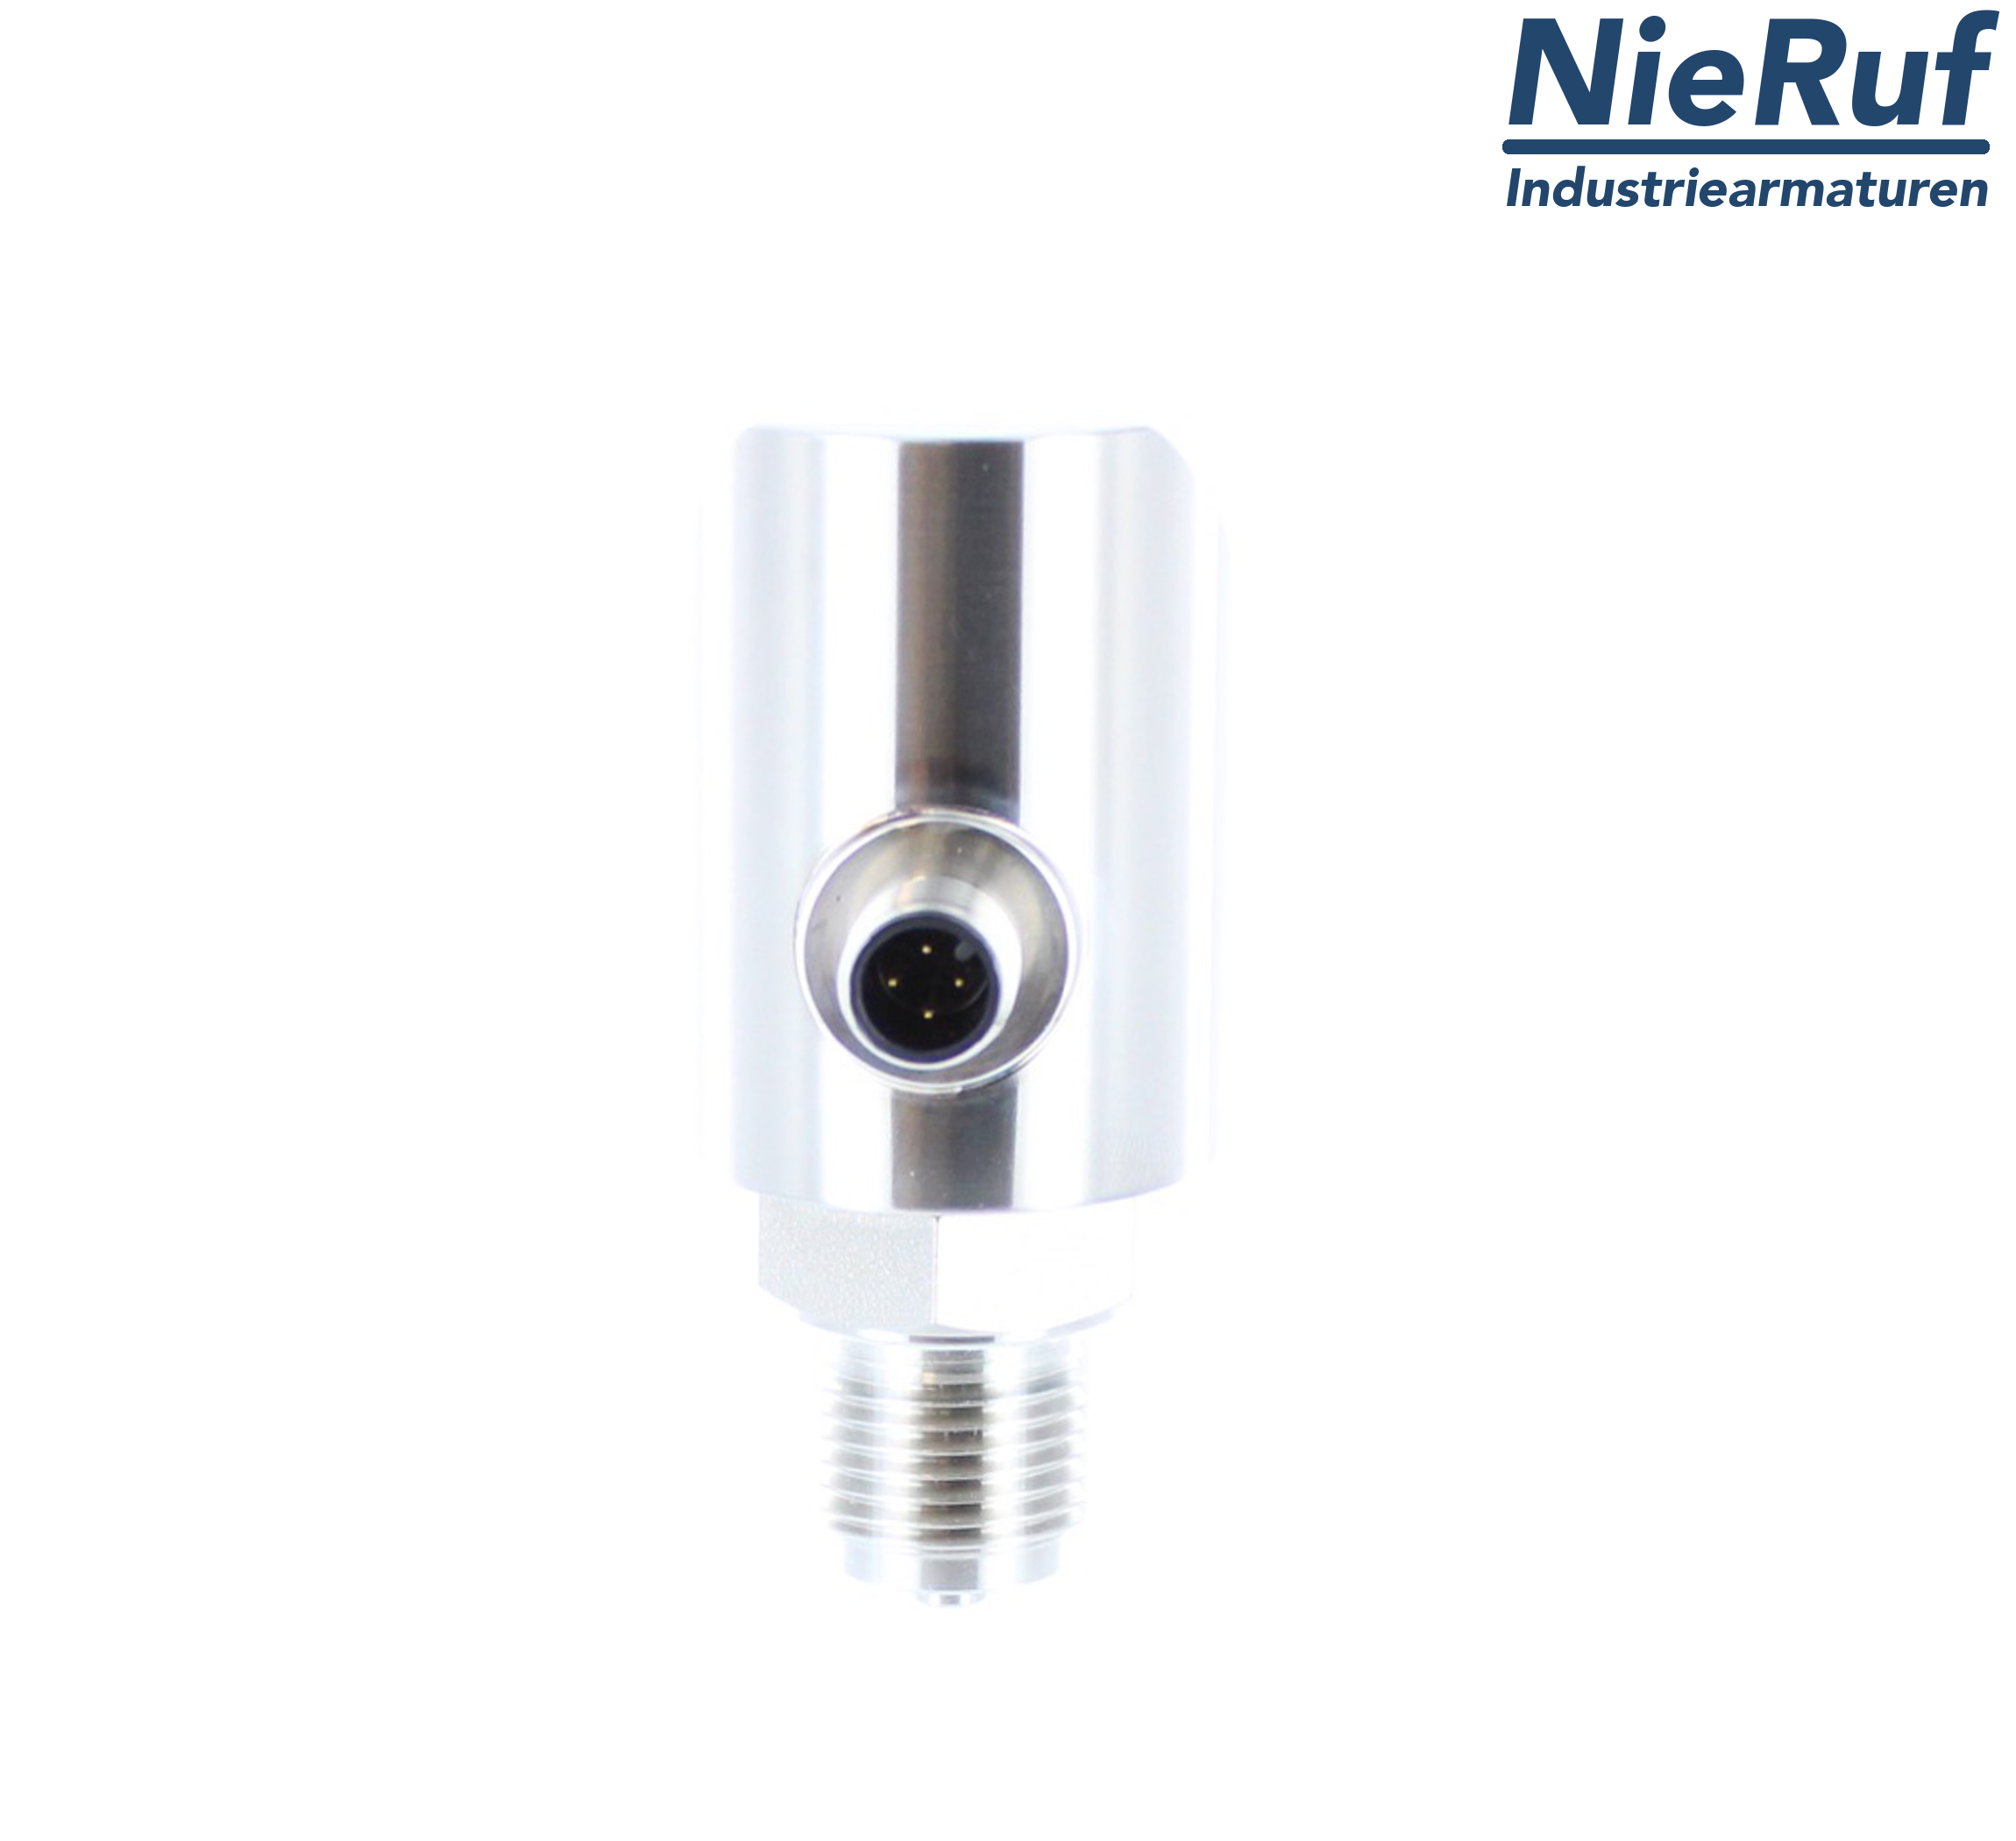 digital pressure sensor G 1/2" B IB 5-wire: 2xPNP, 1x4 - 20mA FPM 0,0 - 4,0 bar